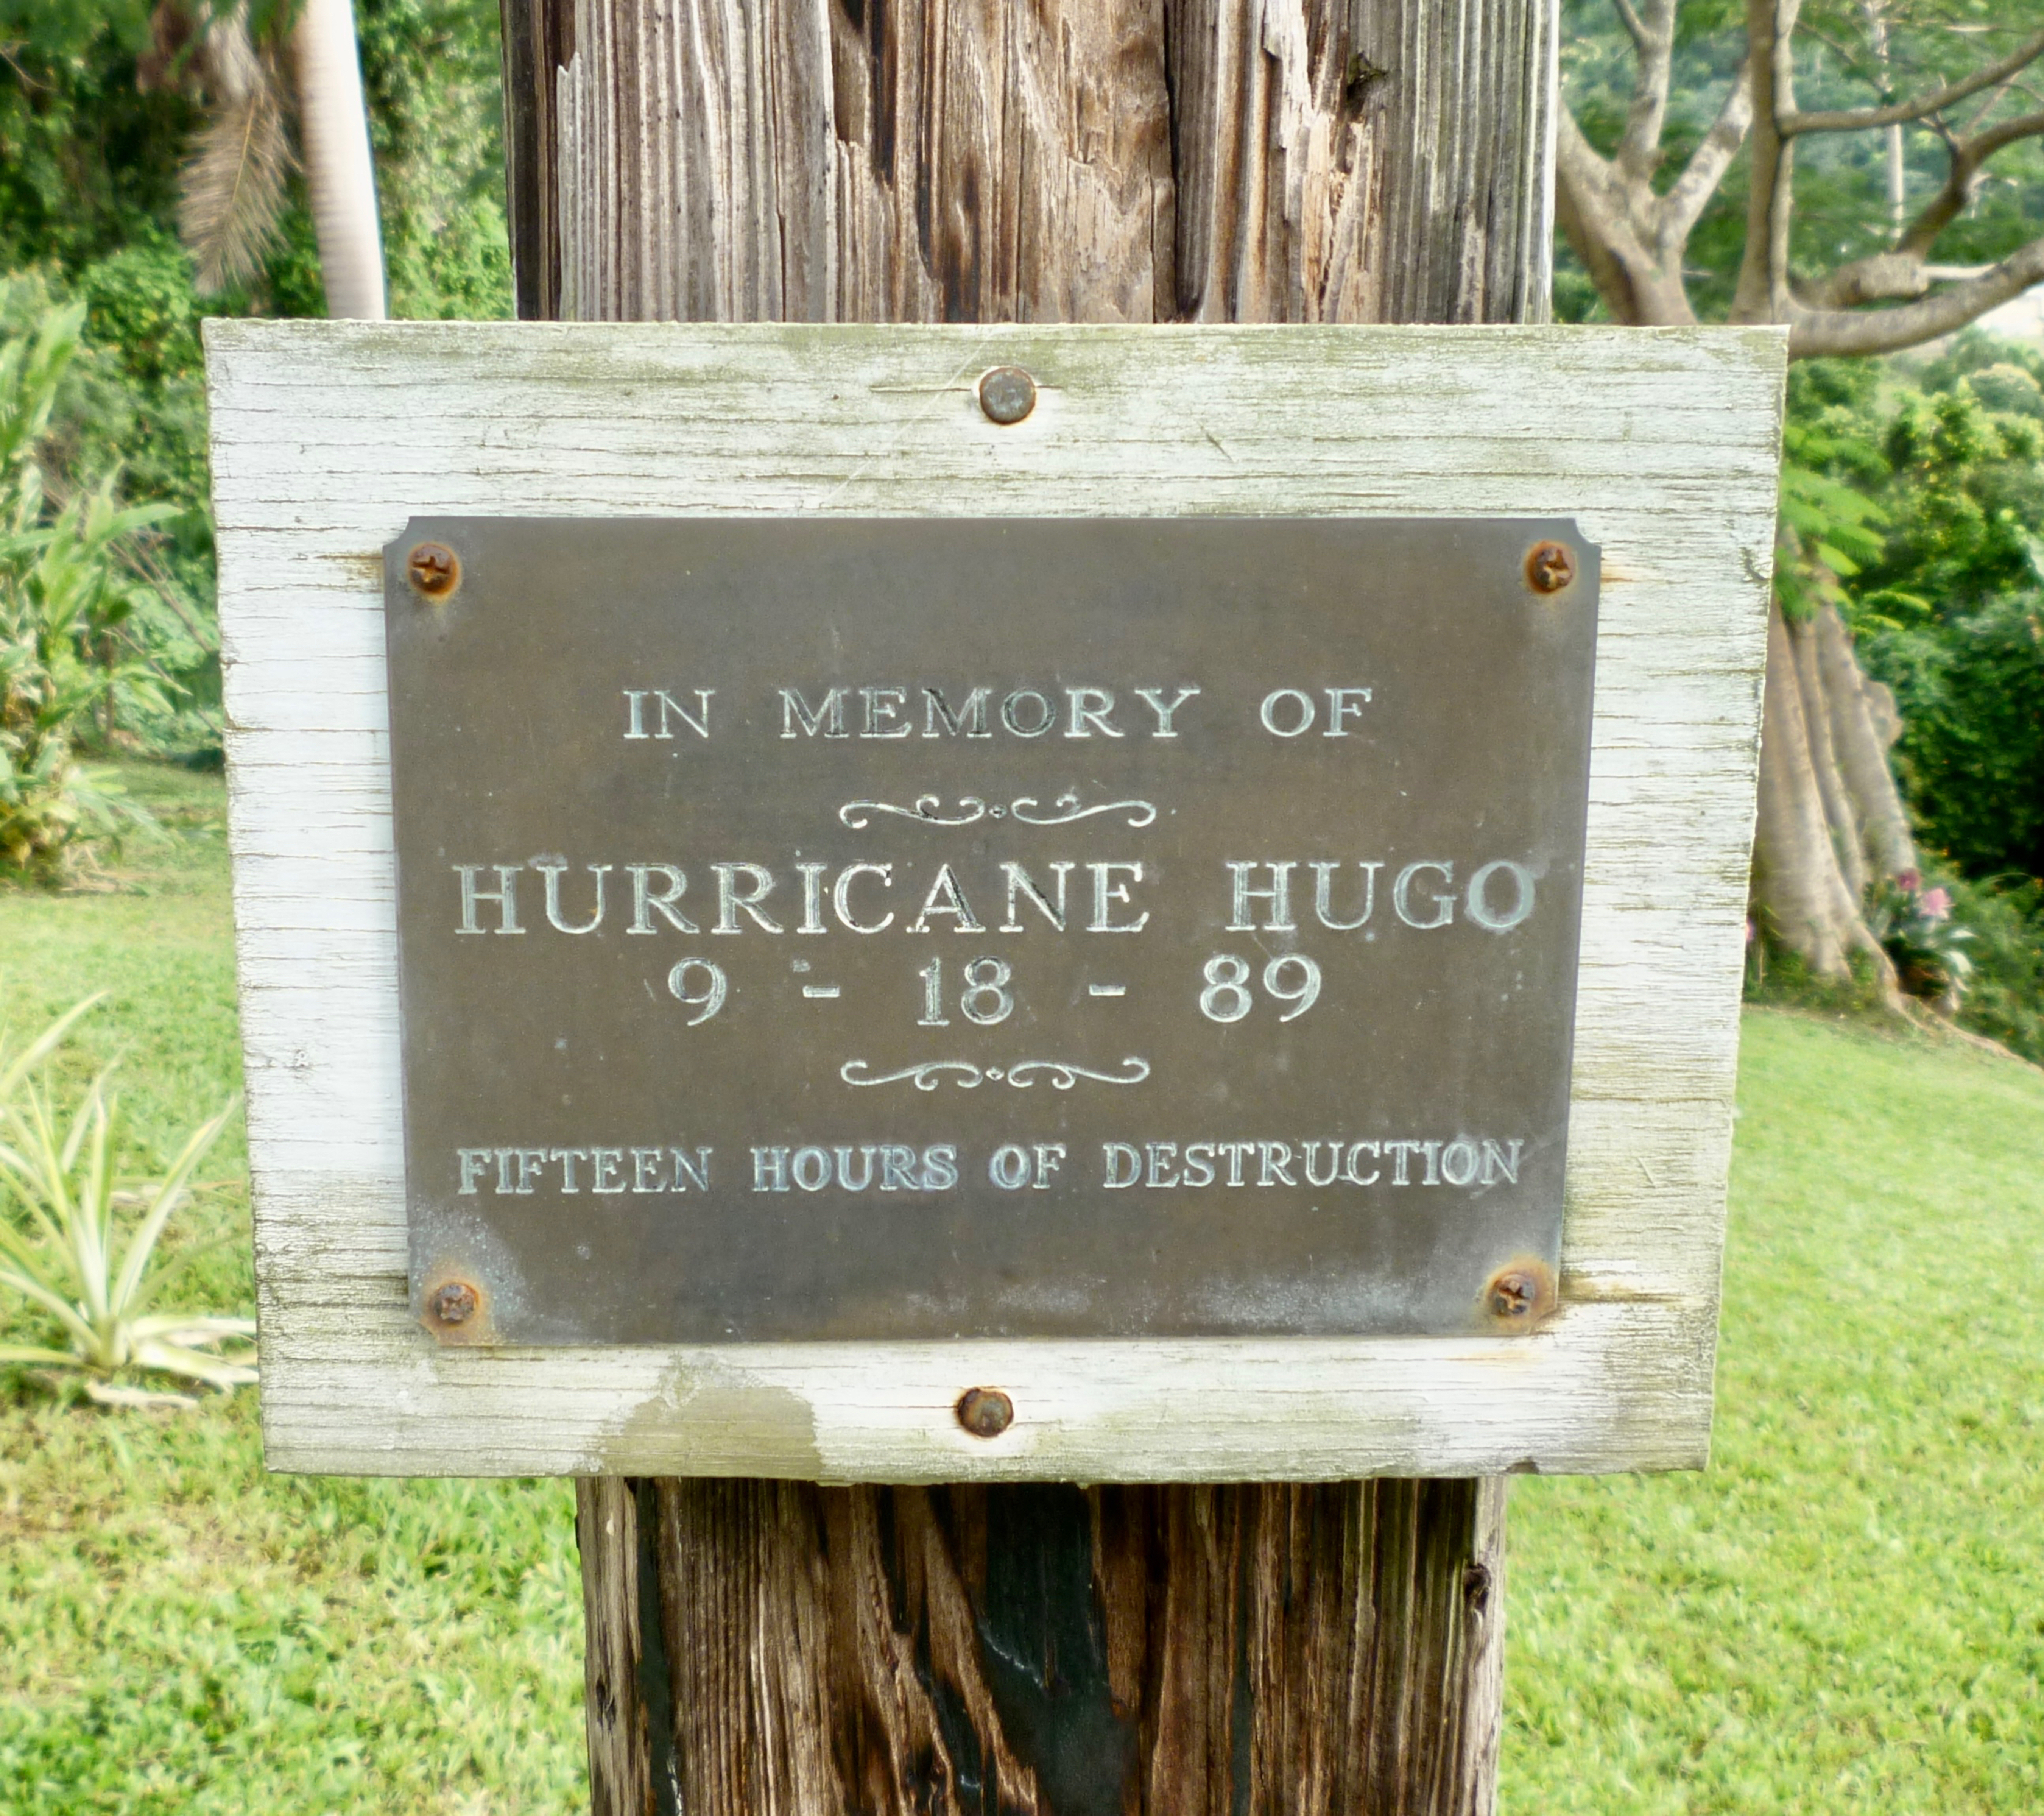     Ces ouragans qui ont marqué les Petites Antilles depuis les années 60 

